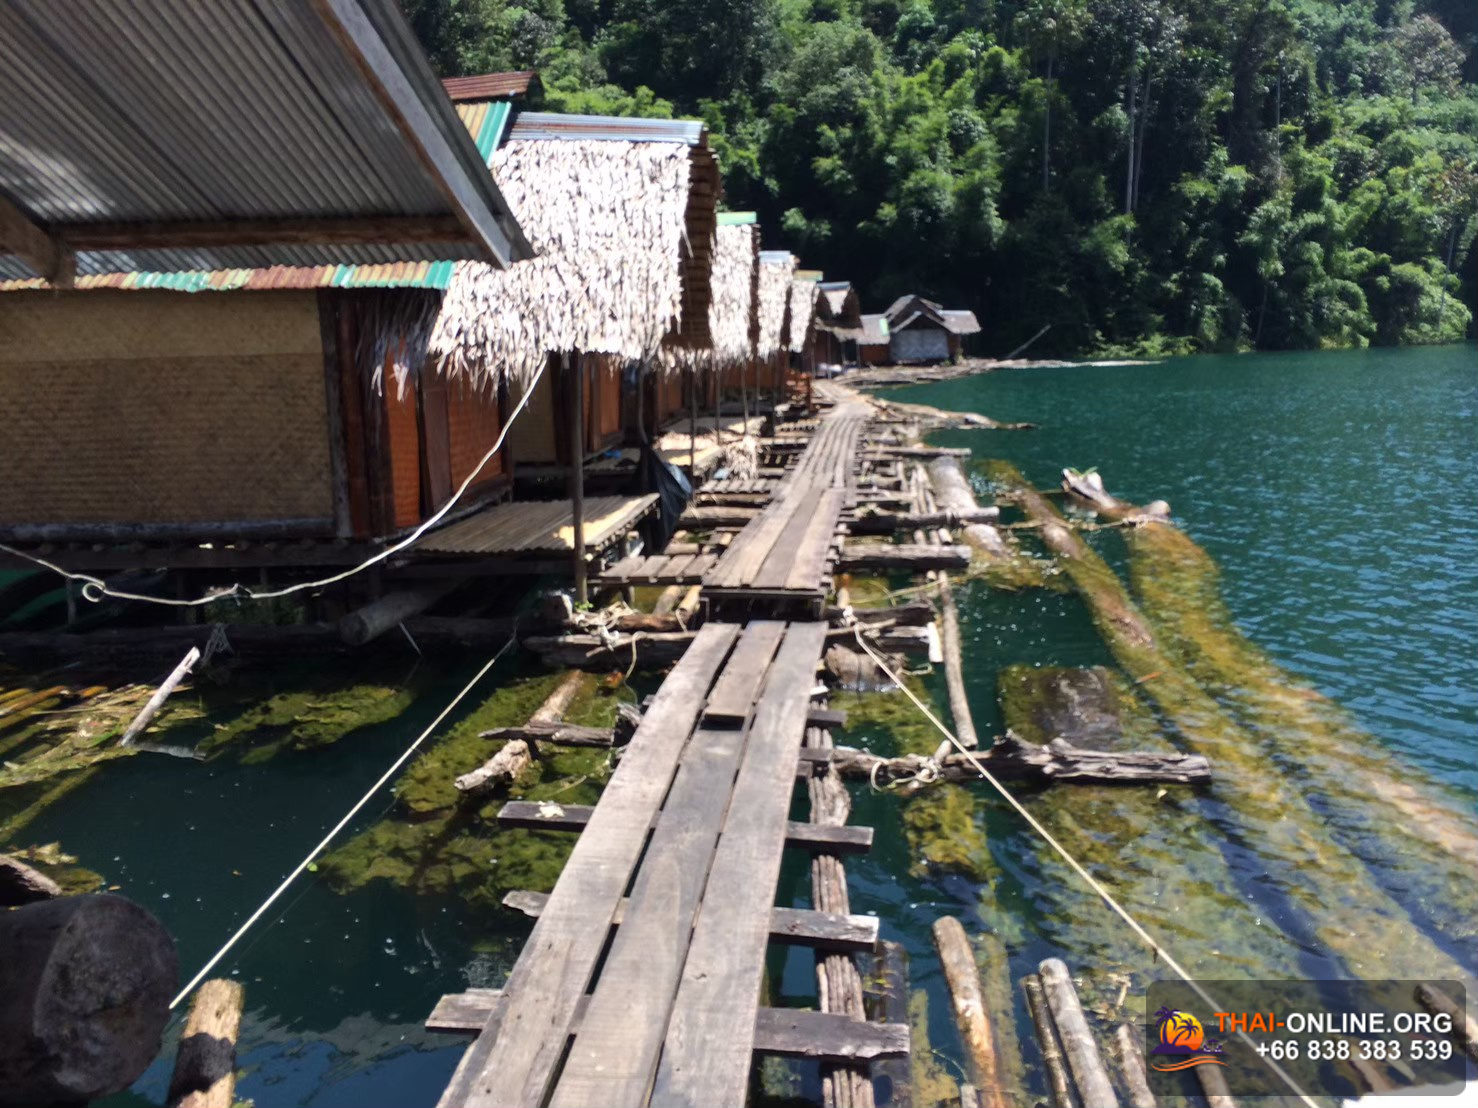 По Следам Леопарда на 3 дня Кхао Сок озеро Чао Лан из Паттайи экскурсия компании Seven Countries в Патайе Таиланде фото 9